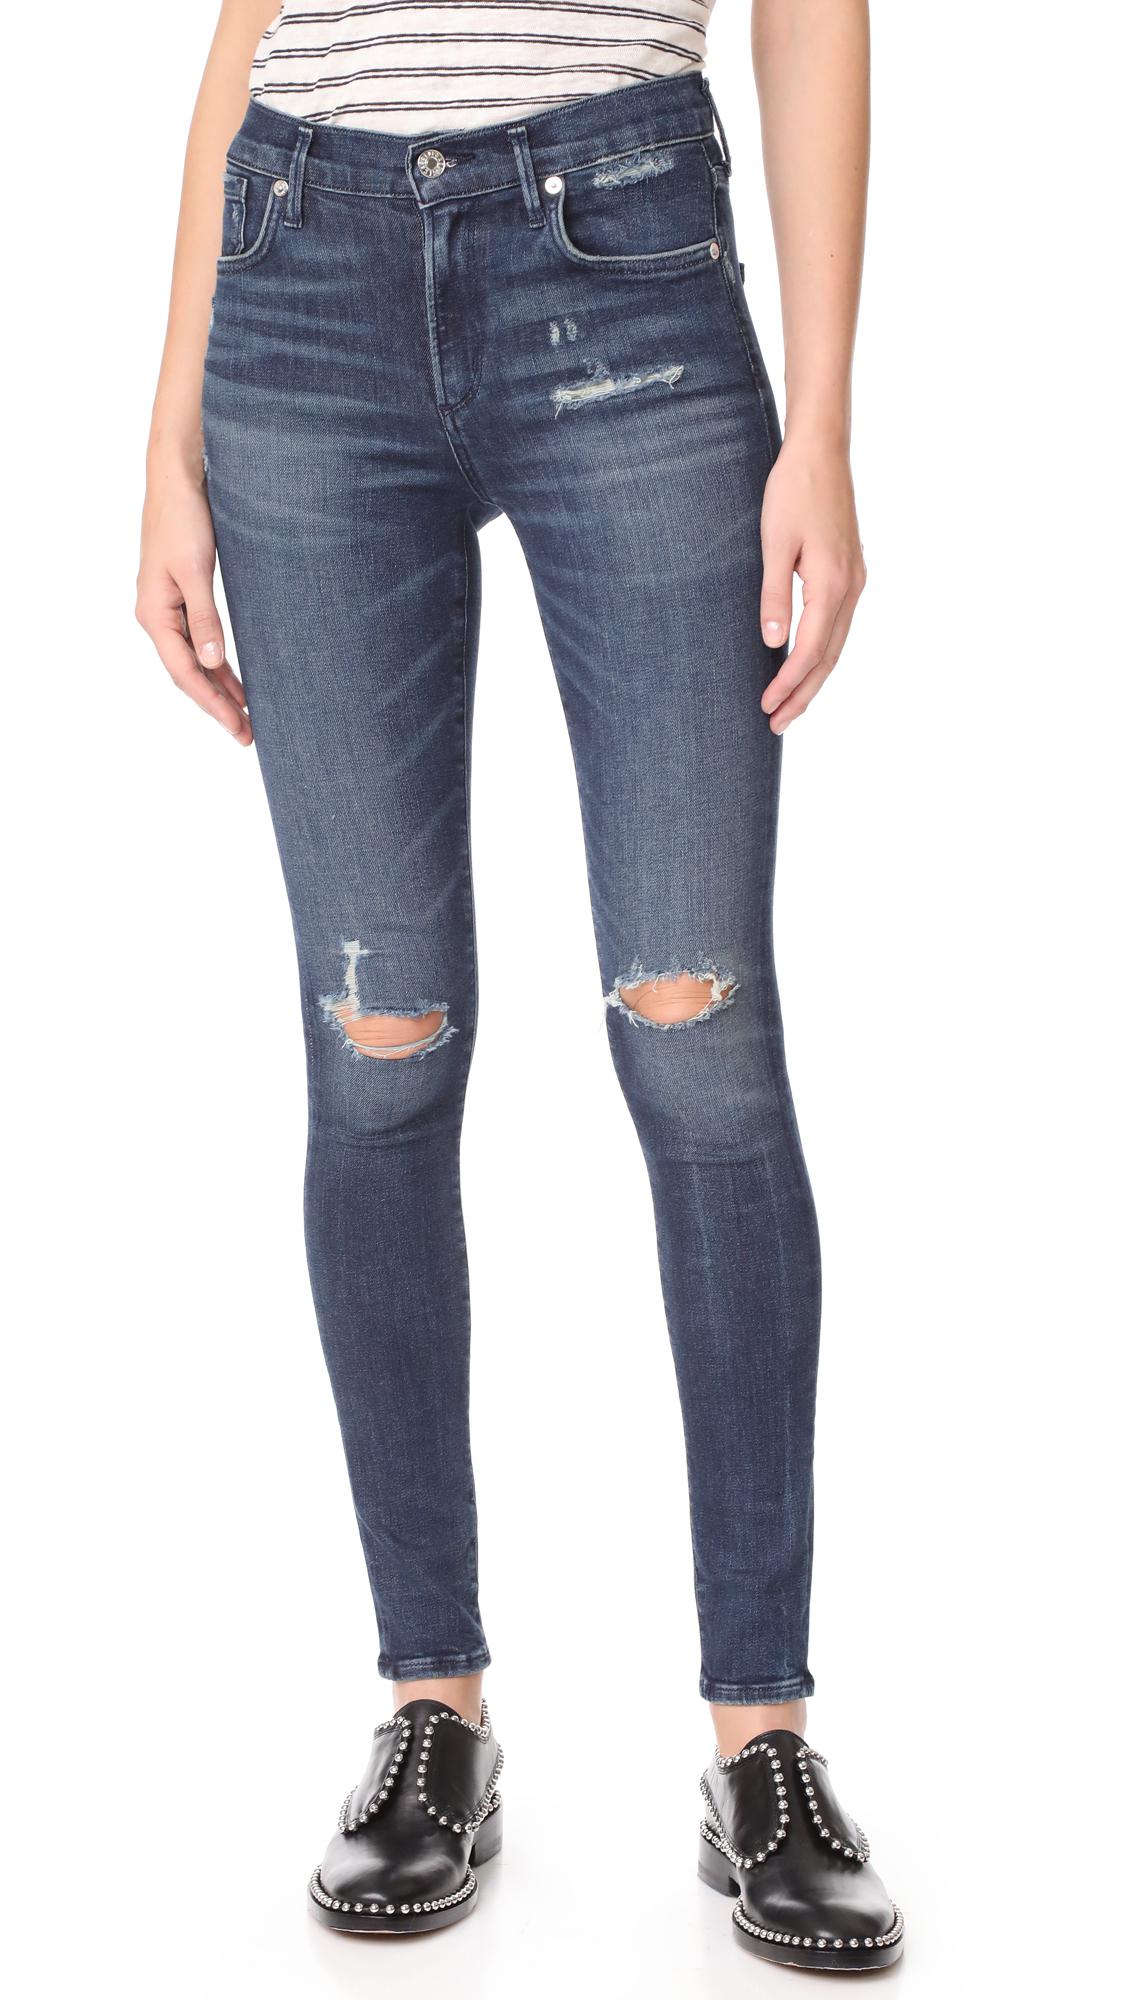 shopbop jeans